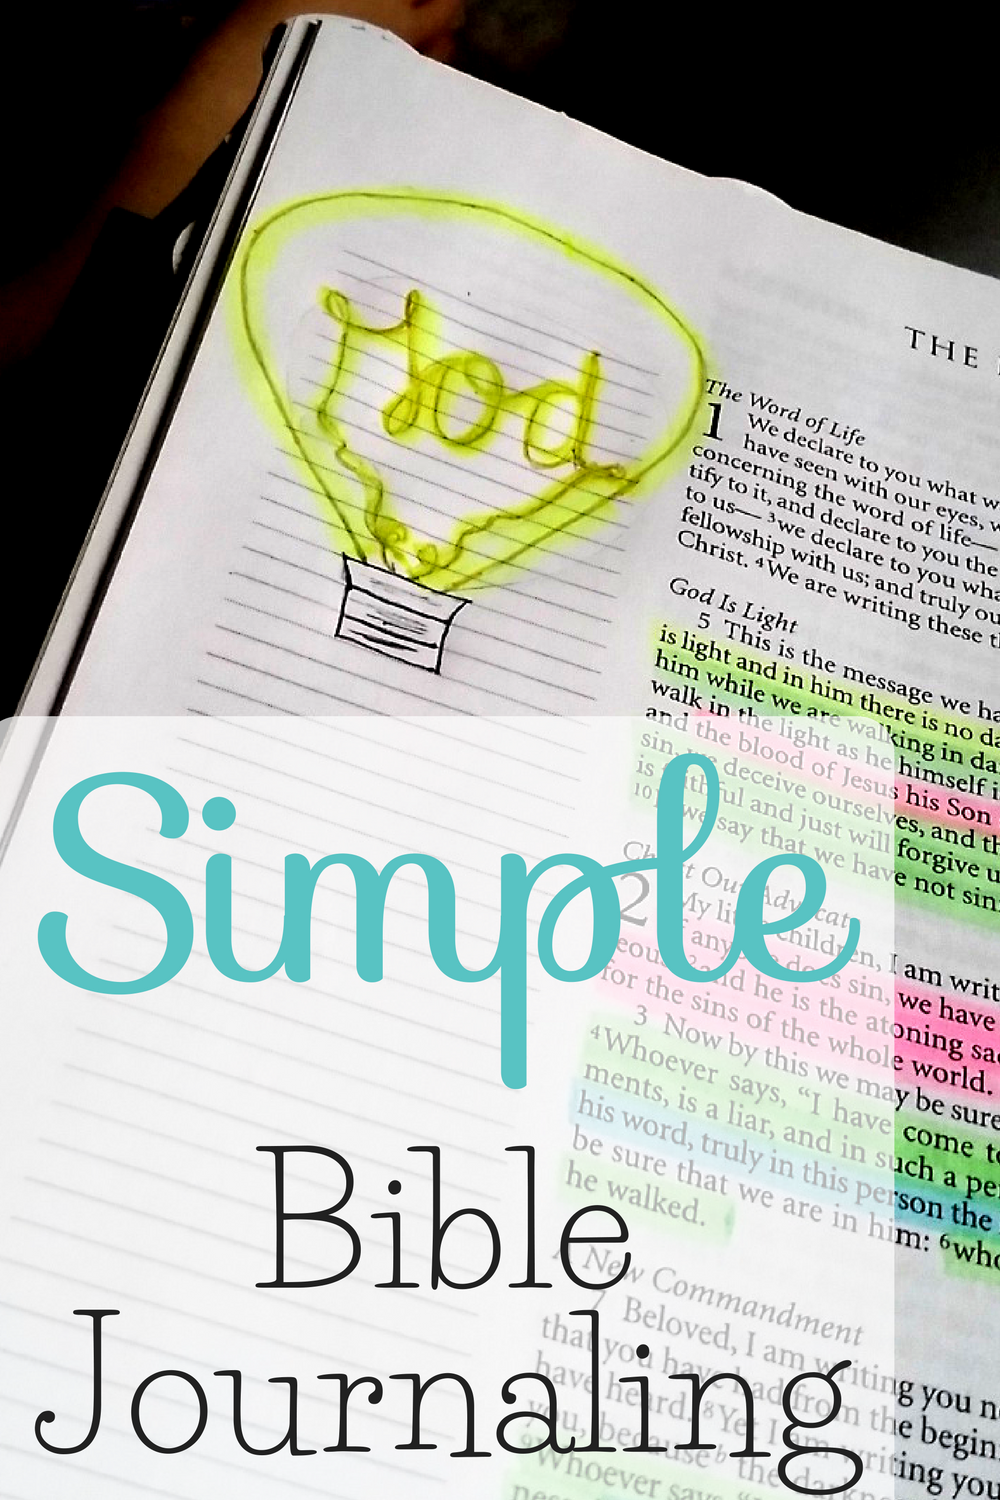 Bible Journaling Tips